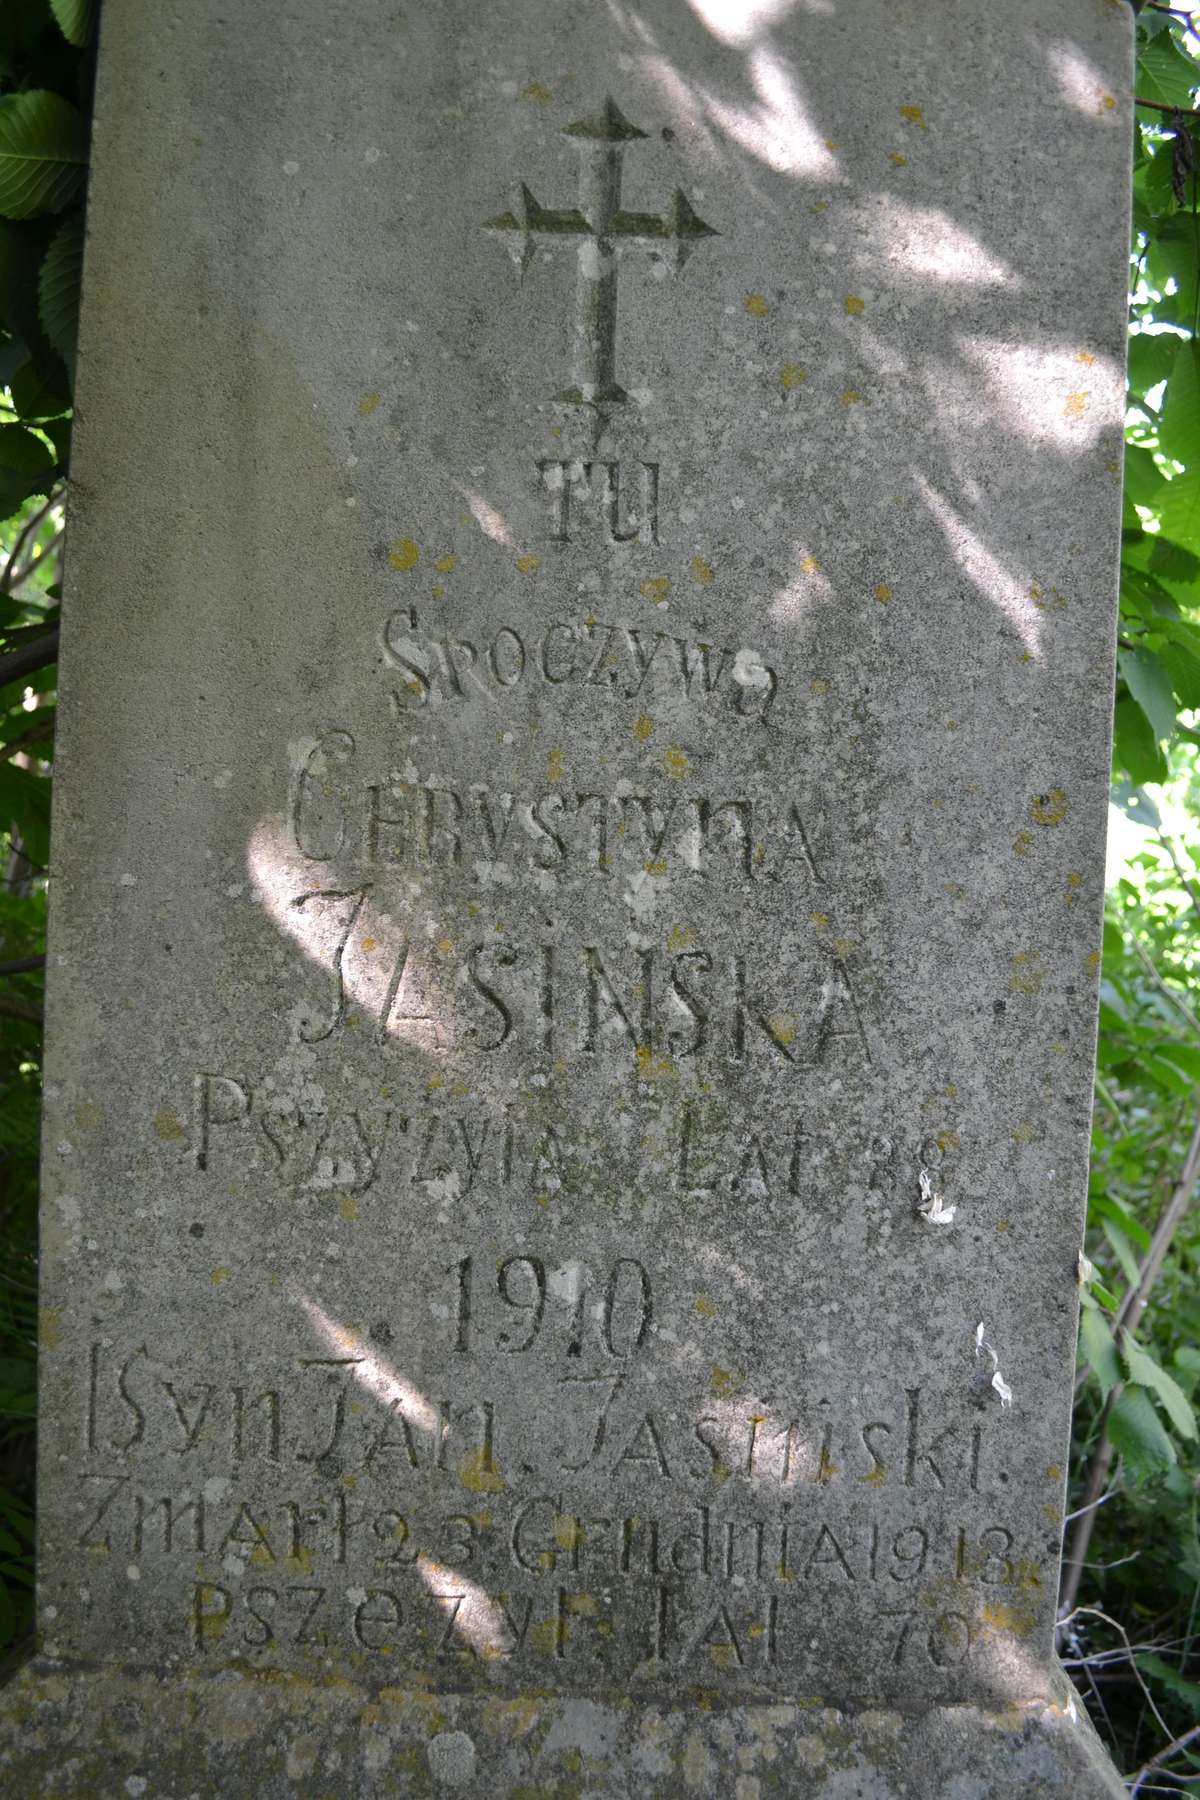 Inscription from the tombstone of Jan, Krystyna and Maciej Jasiński, Bucniowie cemetery